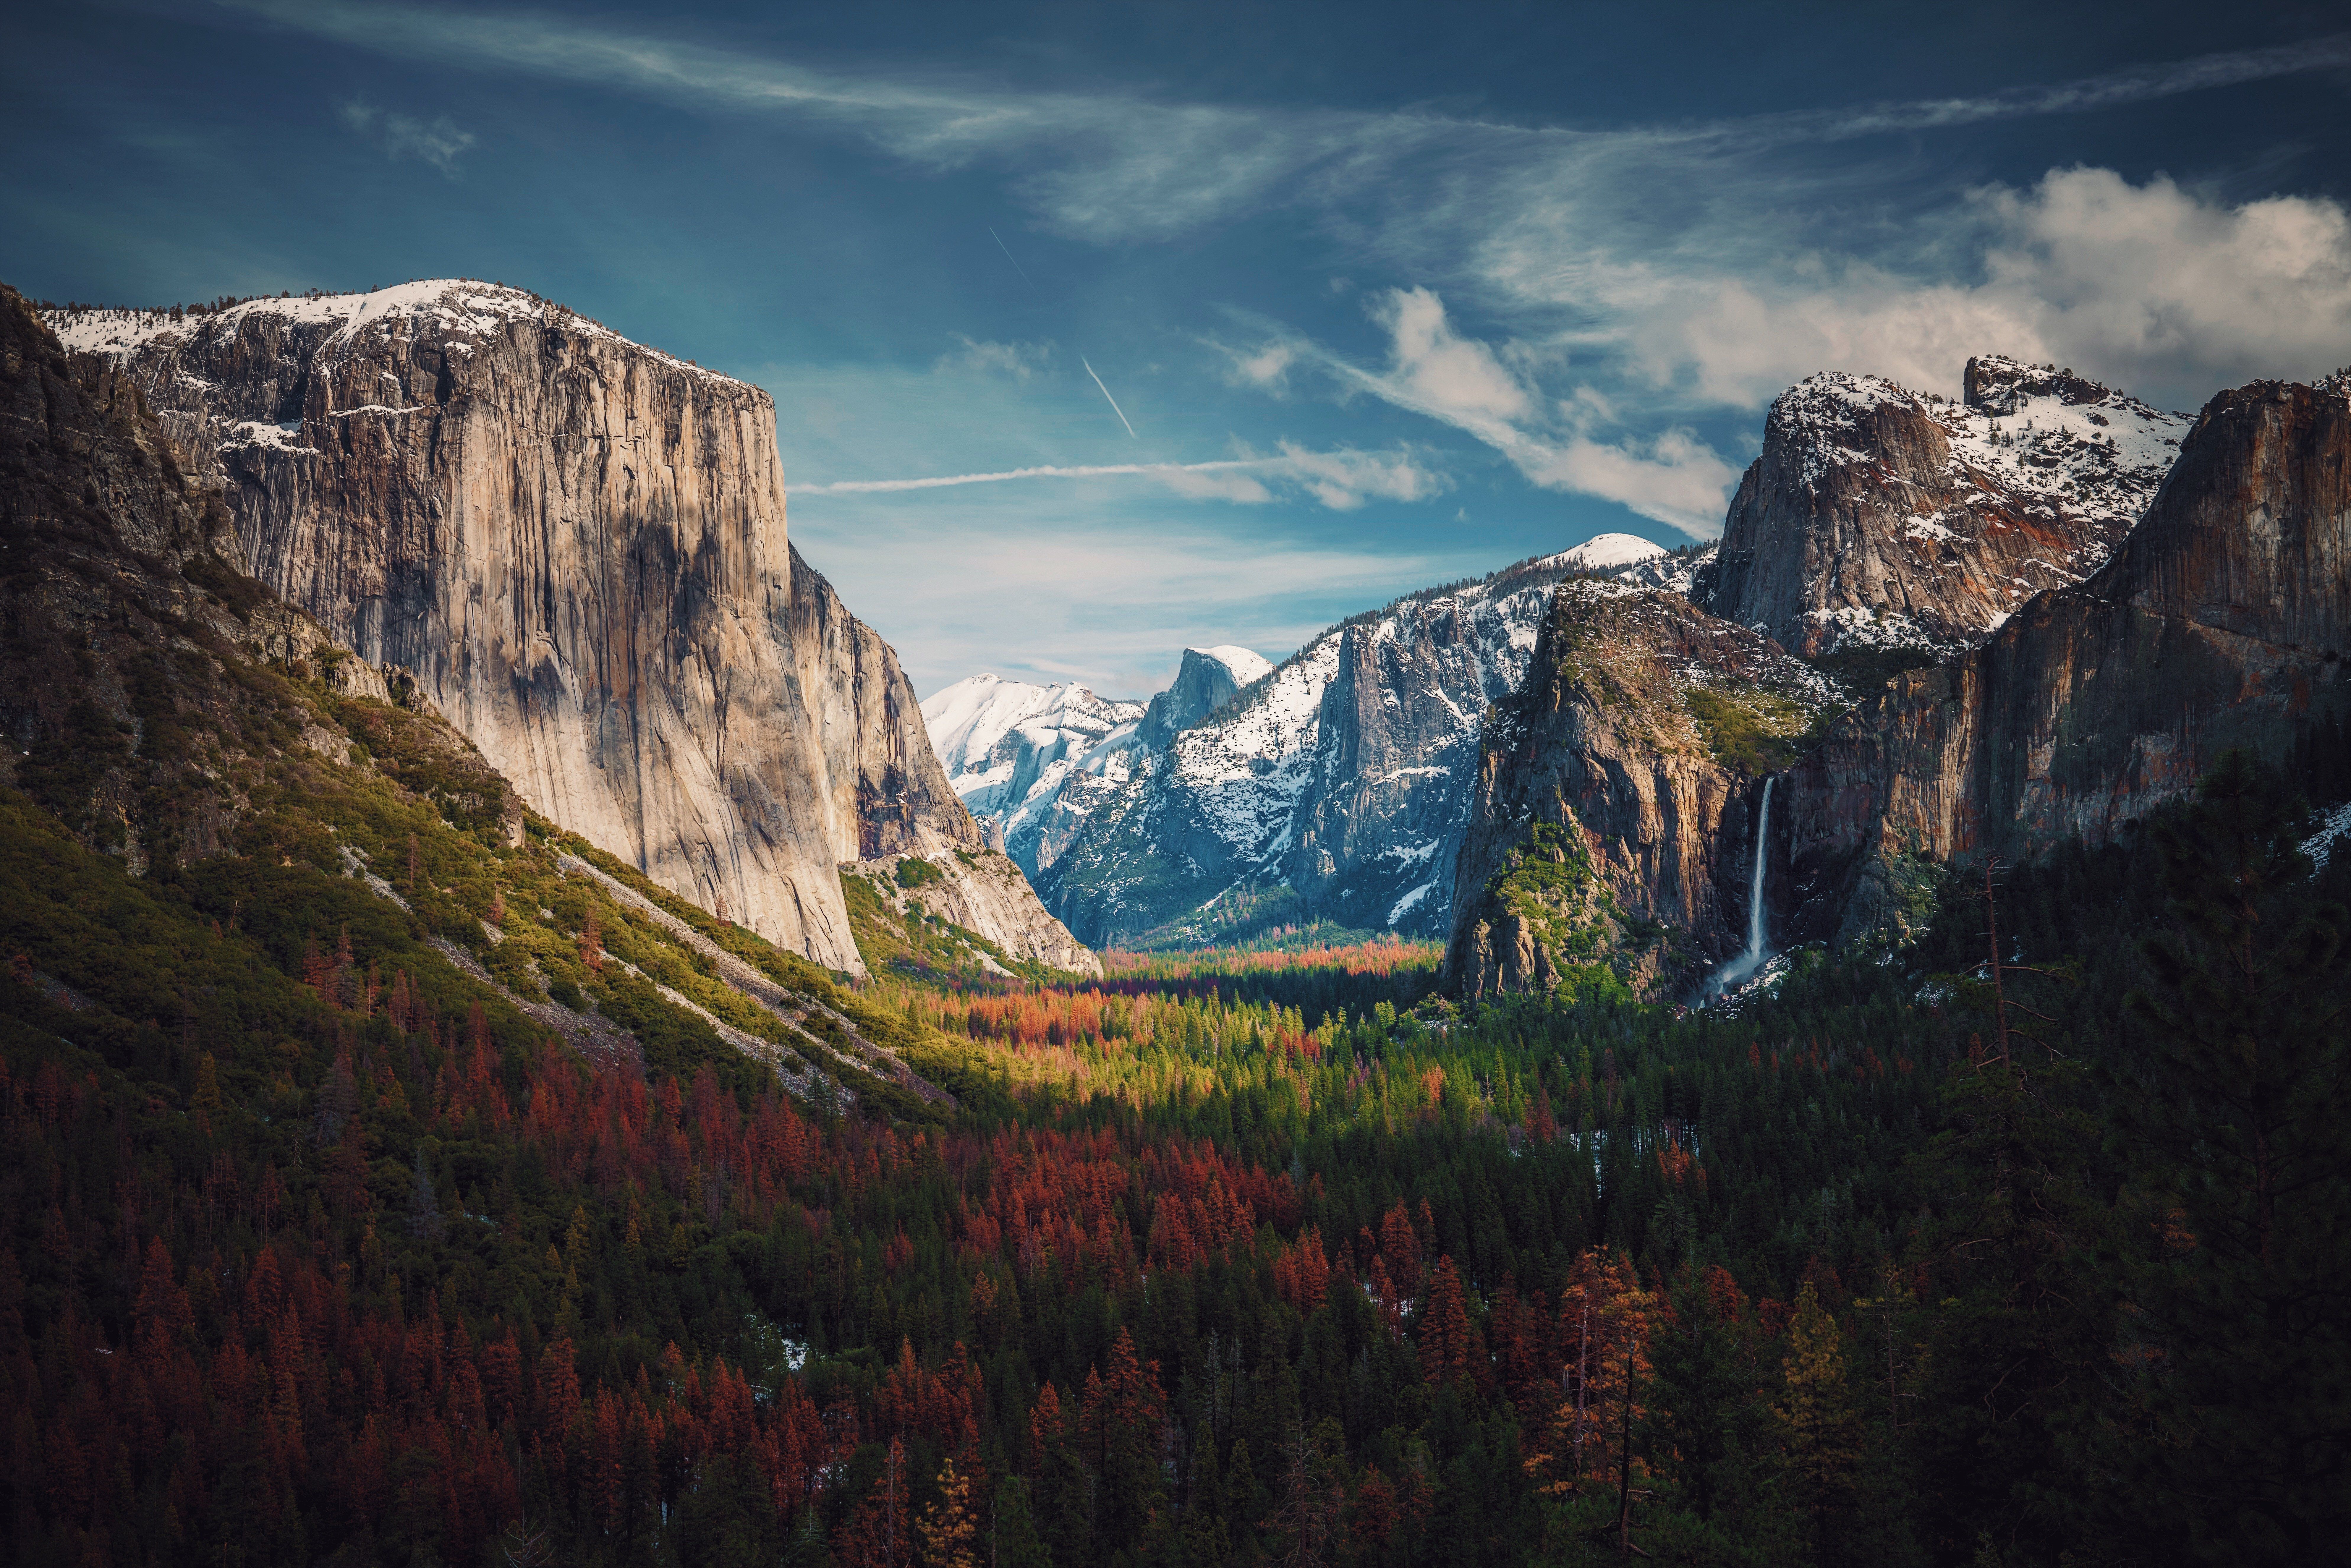 Yosemite National Park - Hãy khám phá những khoảnh khắc kỳ vĩ của Yosemite trong hình nền 4k đẹp mê hồn này. Tận hưởng màn hình của bạn với bầu trời bao la, ngọn núi hùng vĩ và thác nước mãnh liệt. Đây chắc chắn là một trải nghiệm tuyệt vời mà bạn không nên bỏ lỡ.